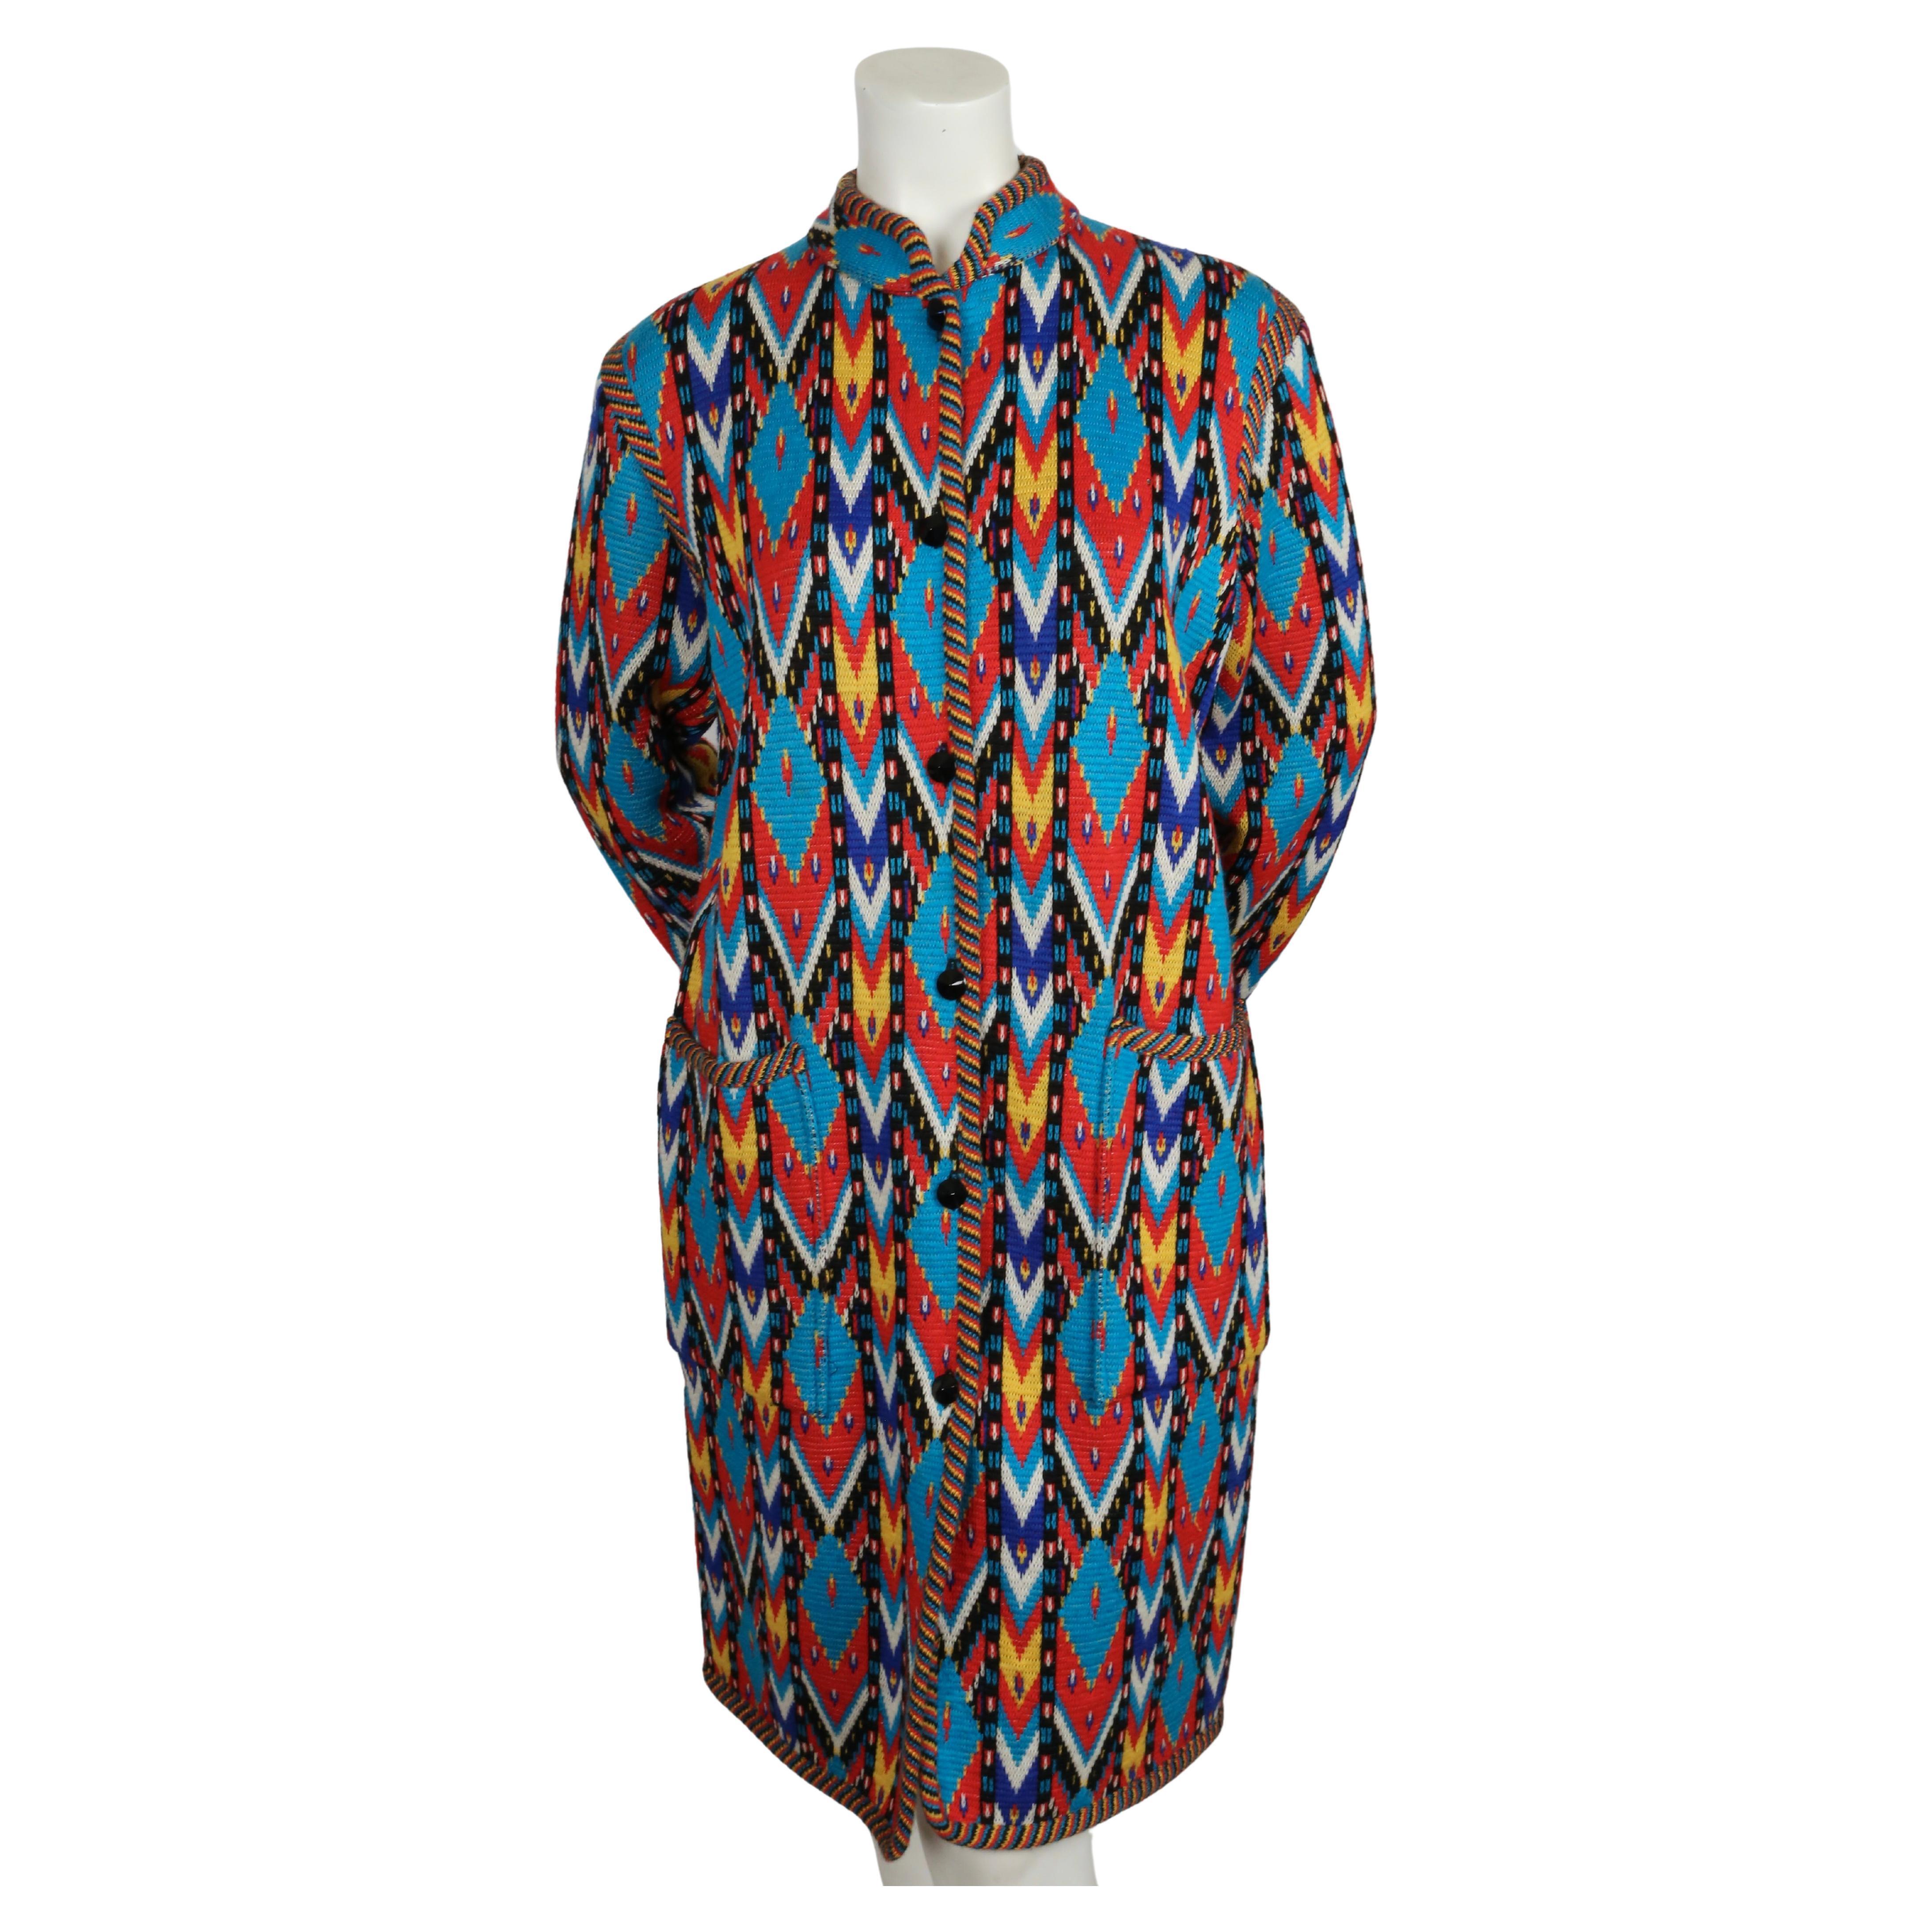 Pull-over en laine tissée multicolore à motifs Ikat  avec poches plaquées conçu par Yves Saint Laurent datant de l'automne 1979. Labellisé taille 42 en France. Mesures approximatives (non étiré) : épaule 17